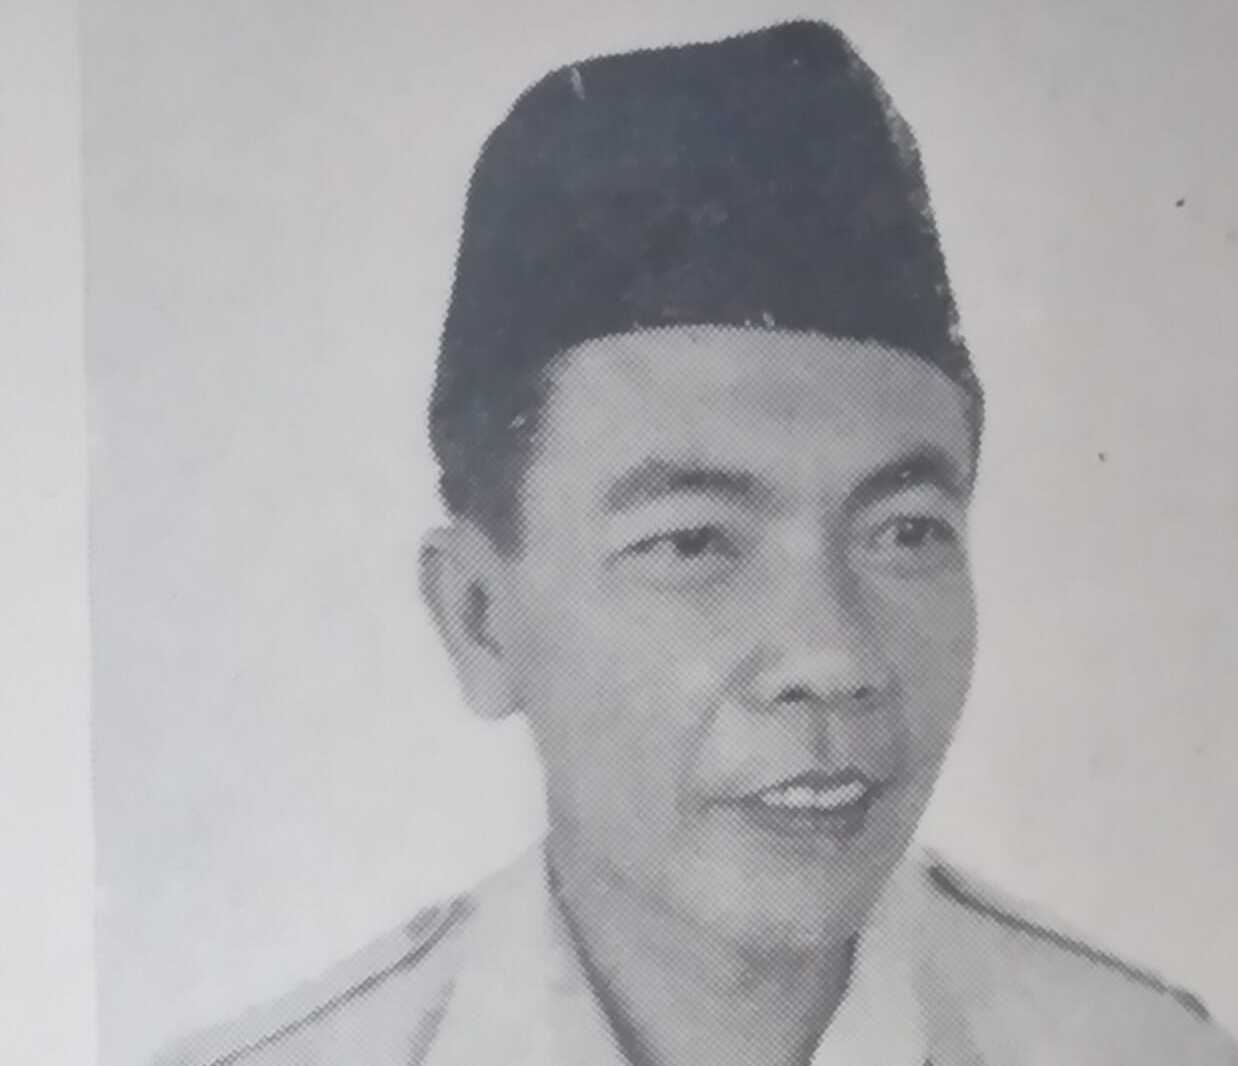  Sejarah DPRD Kota Palembang (Bagian Kedua)